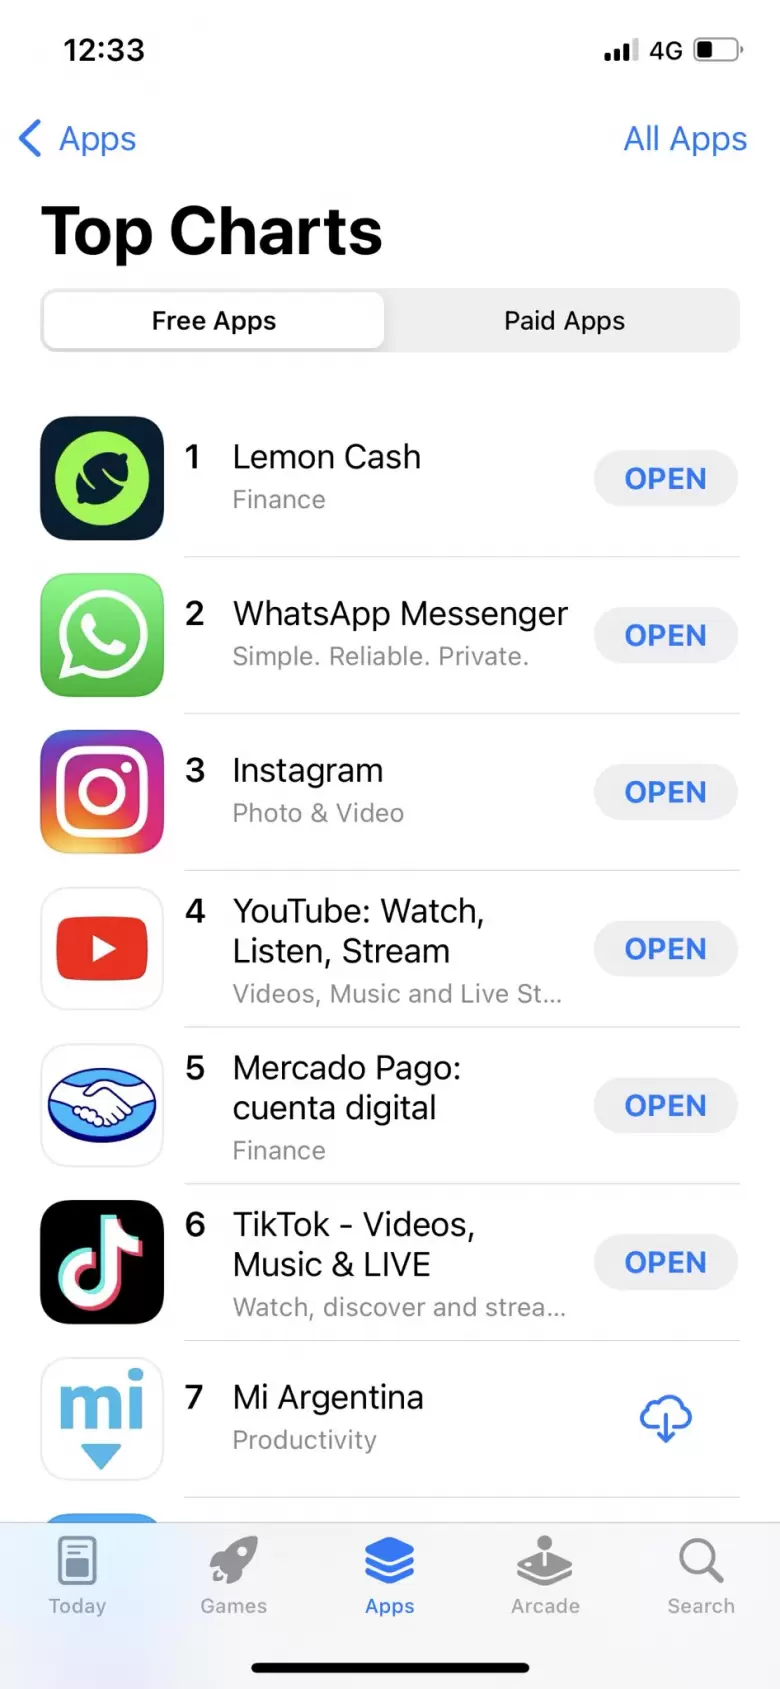 Lemon Cash se posiciono como la app mas descargada